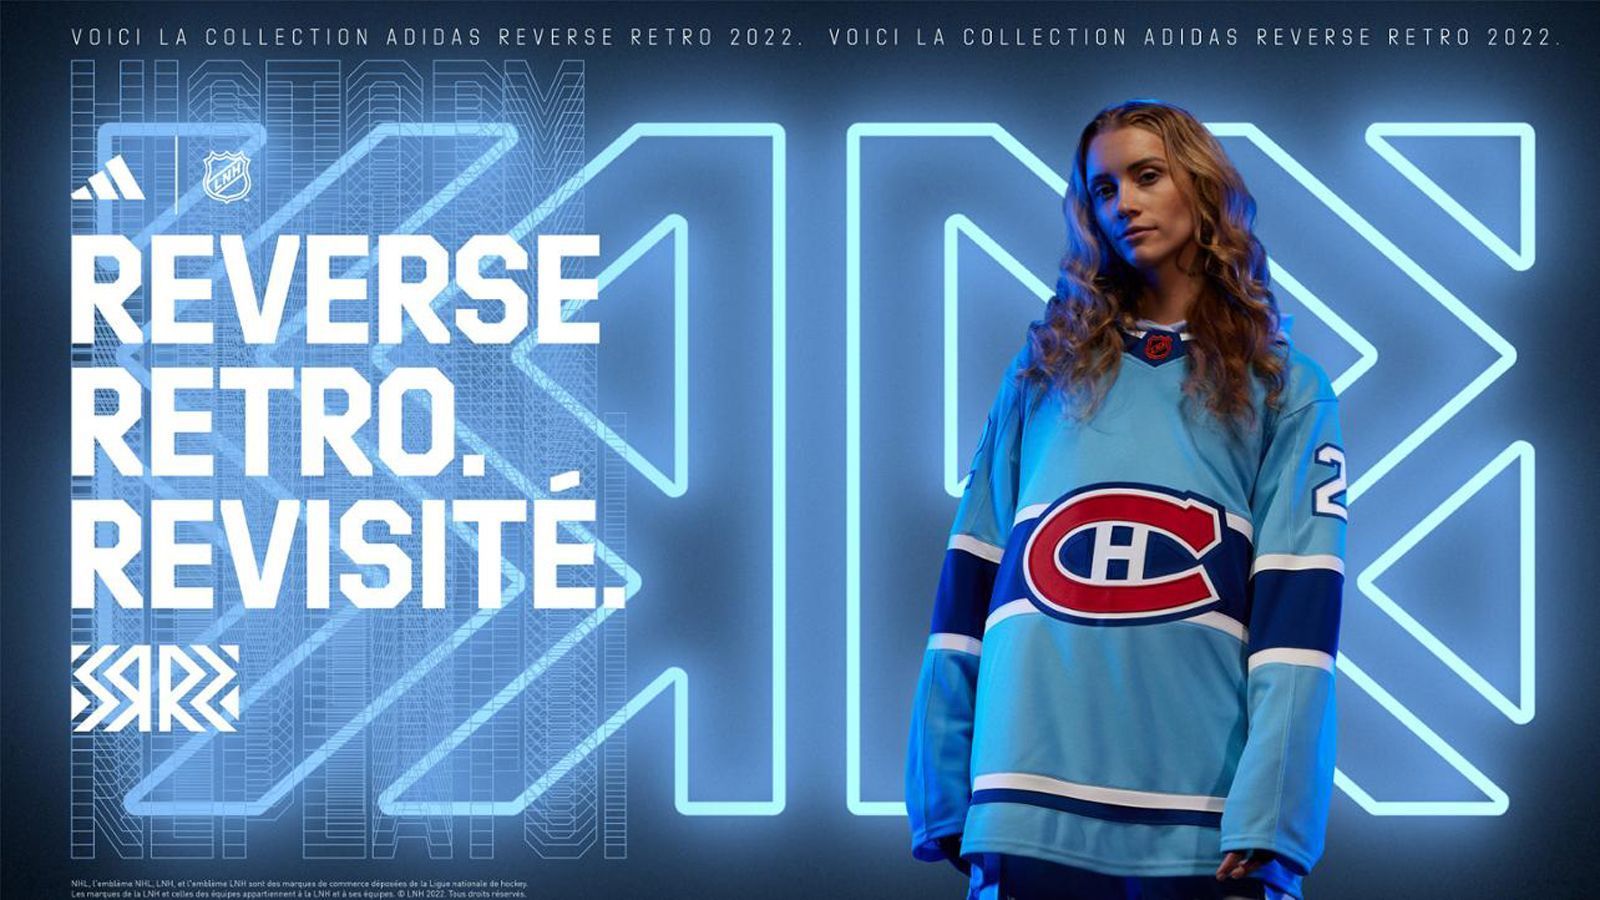 
                <strong>Montreal Canadiens</strong><br>
                Das Trikot der Canadiens aus dem Jahr 1979, als das Team seinen 22. Stanley-Cup-Titel und den vierten in Folge gewann, wird in einem neuen hellblauen Farbton wiederbelebt, der von den Farben der Stadt Montreal inspiriert ist.
              